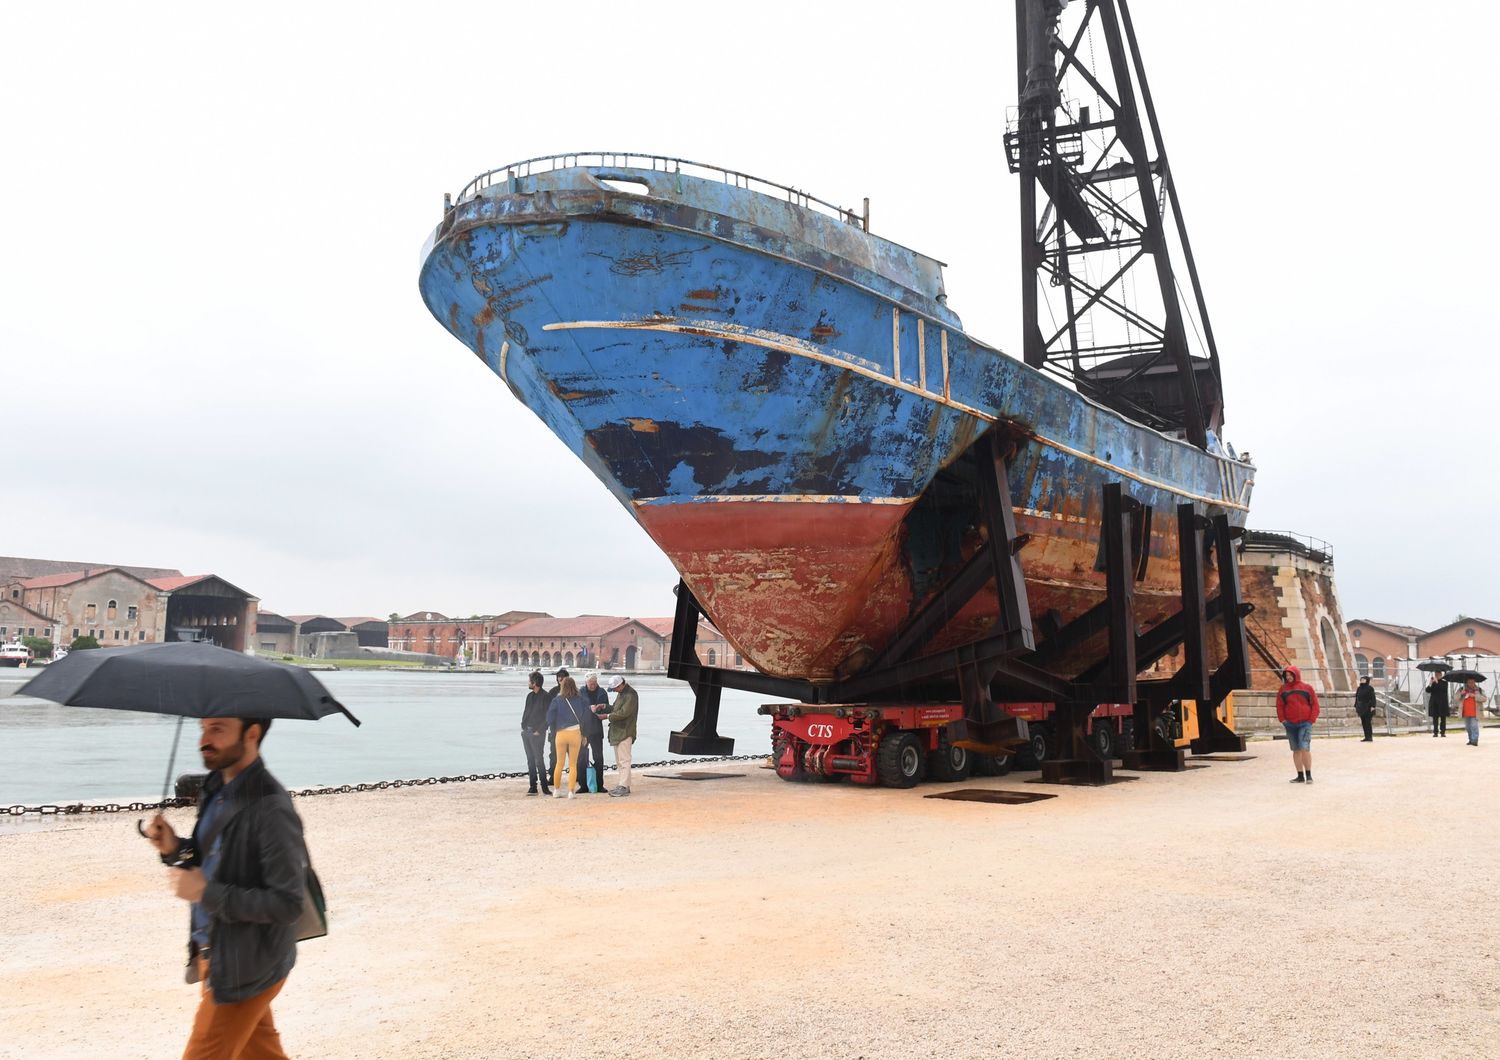 Il relitto del barcone affondato nel 2015 con centinaia di migranti in mostra alla Biennale di Venezia